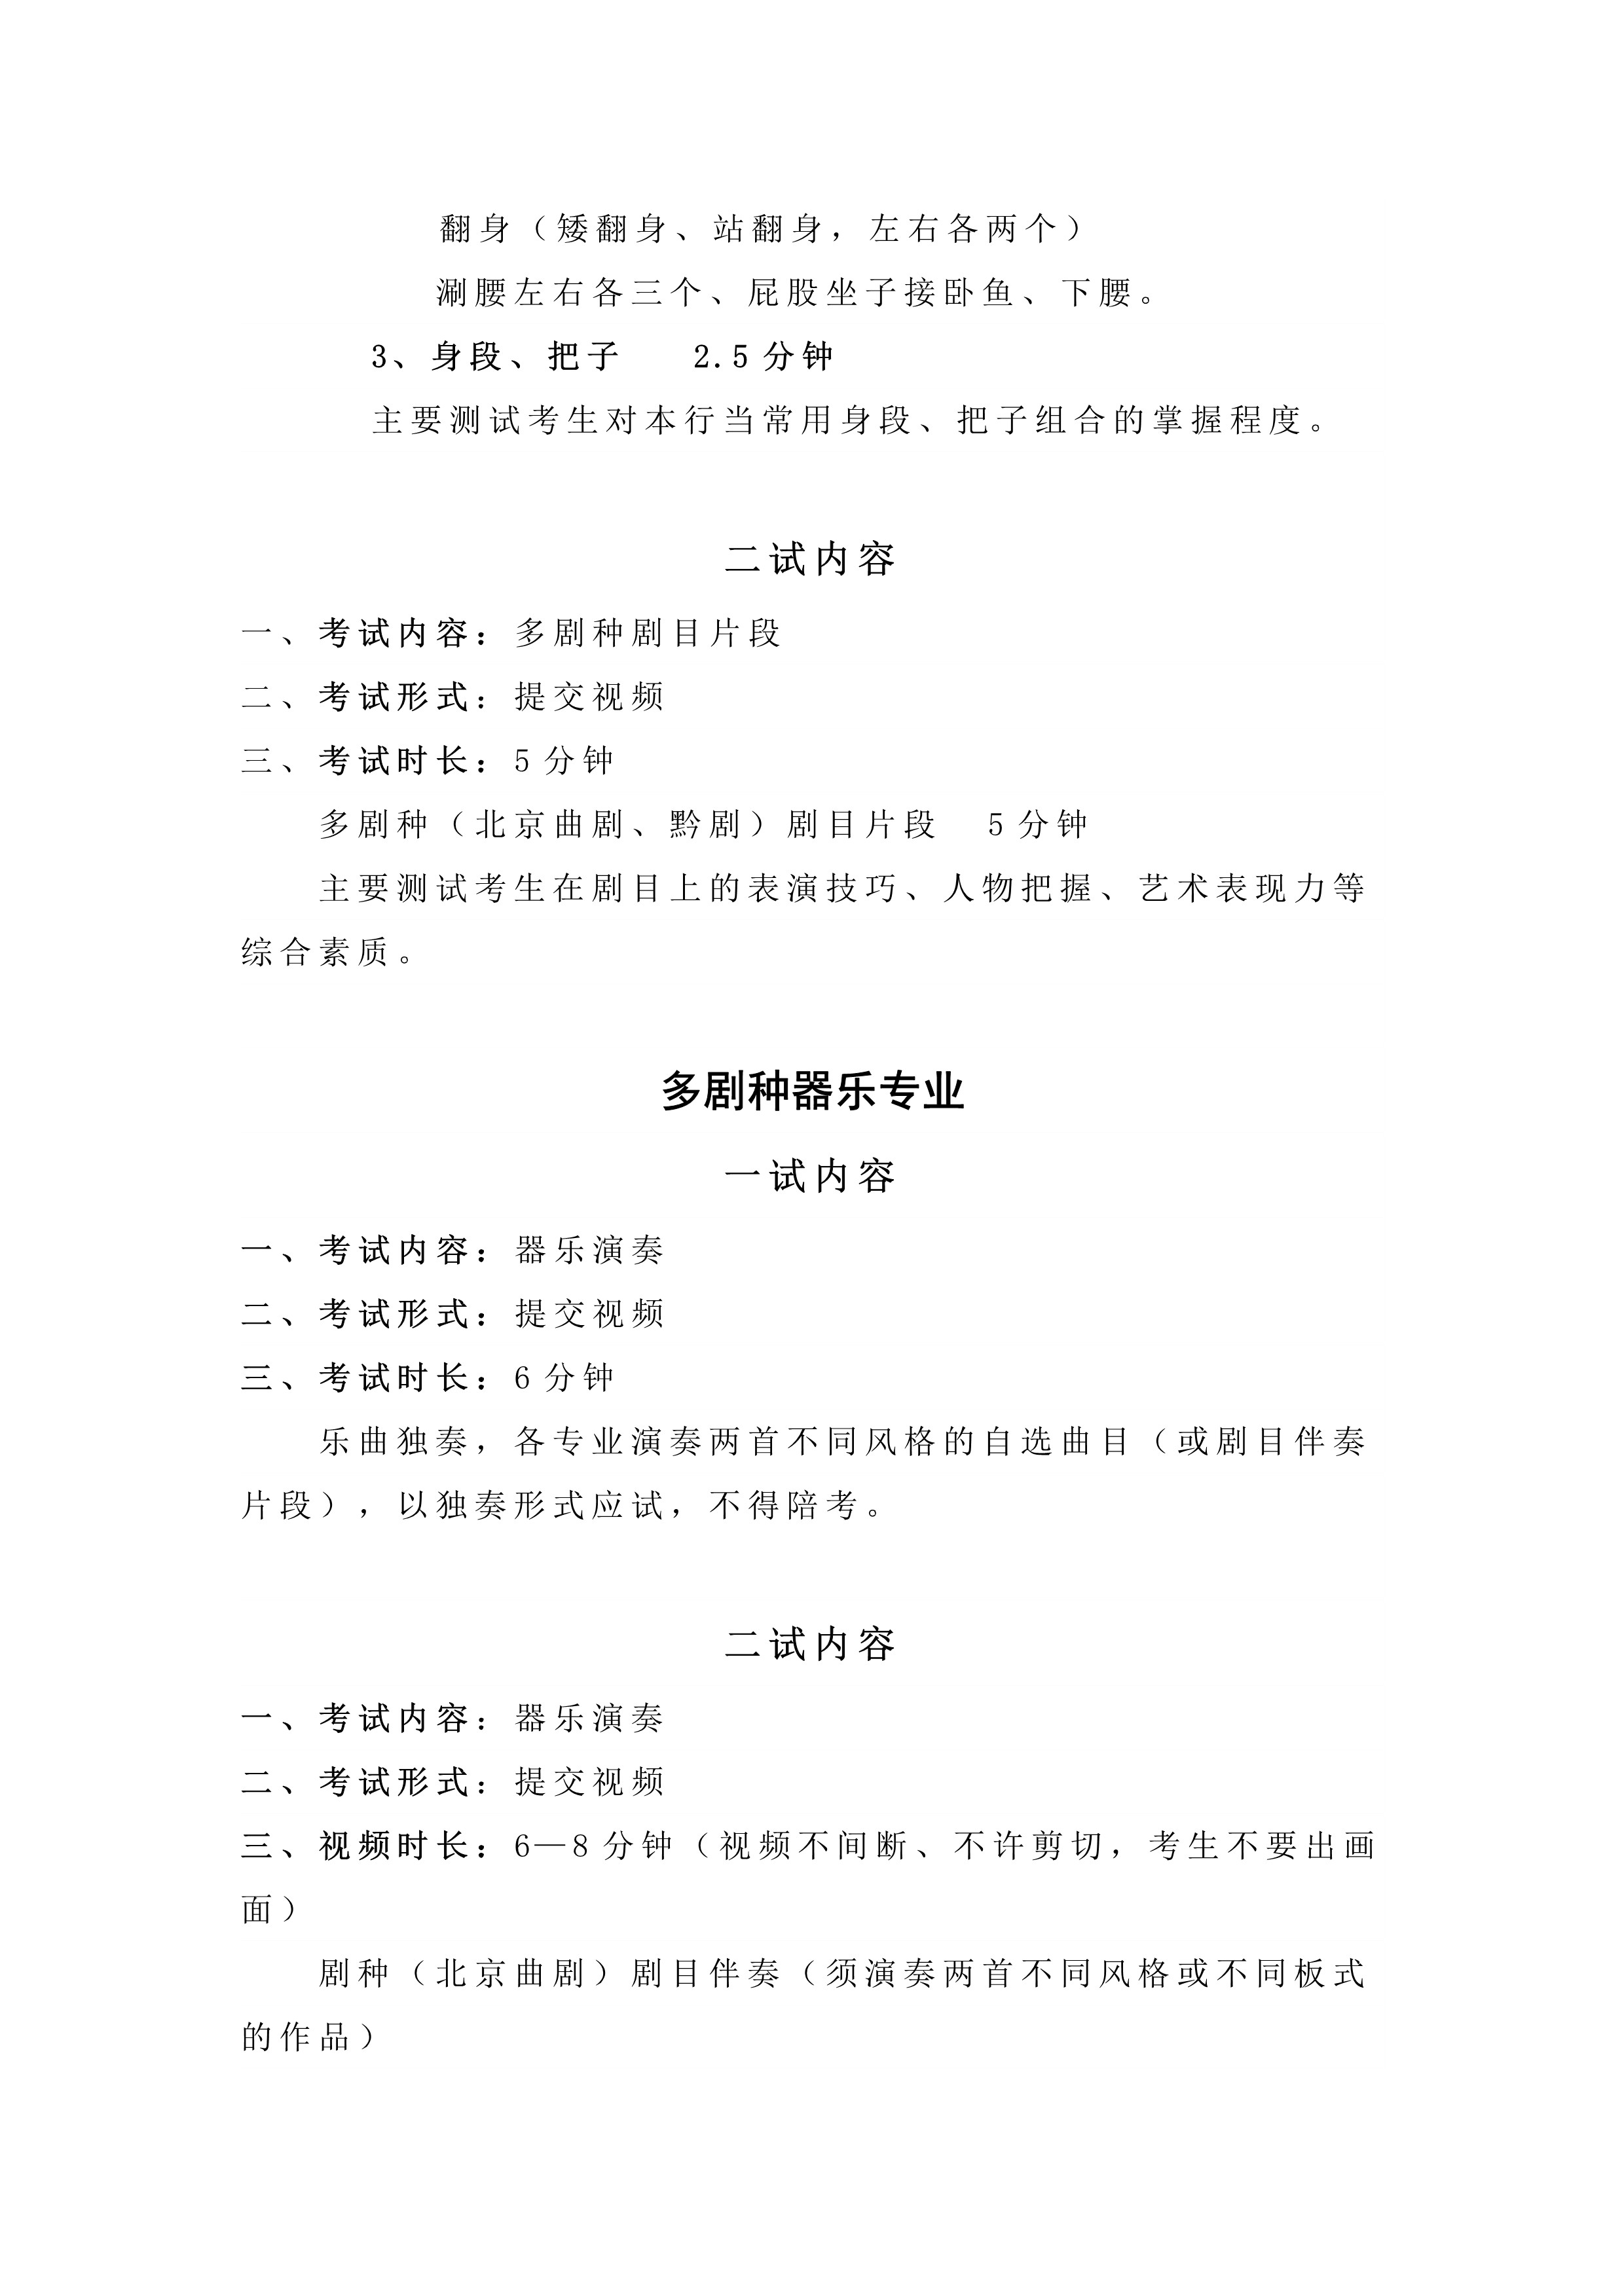 中国戏曲学院2023年本科招生表演系专业考试内容与要求_2.jpg